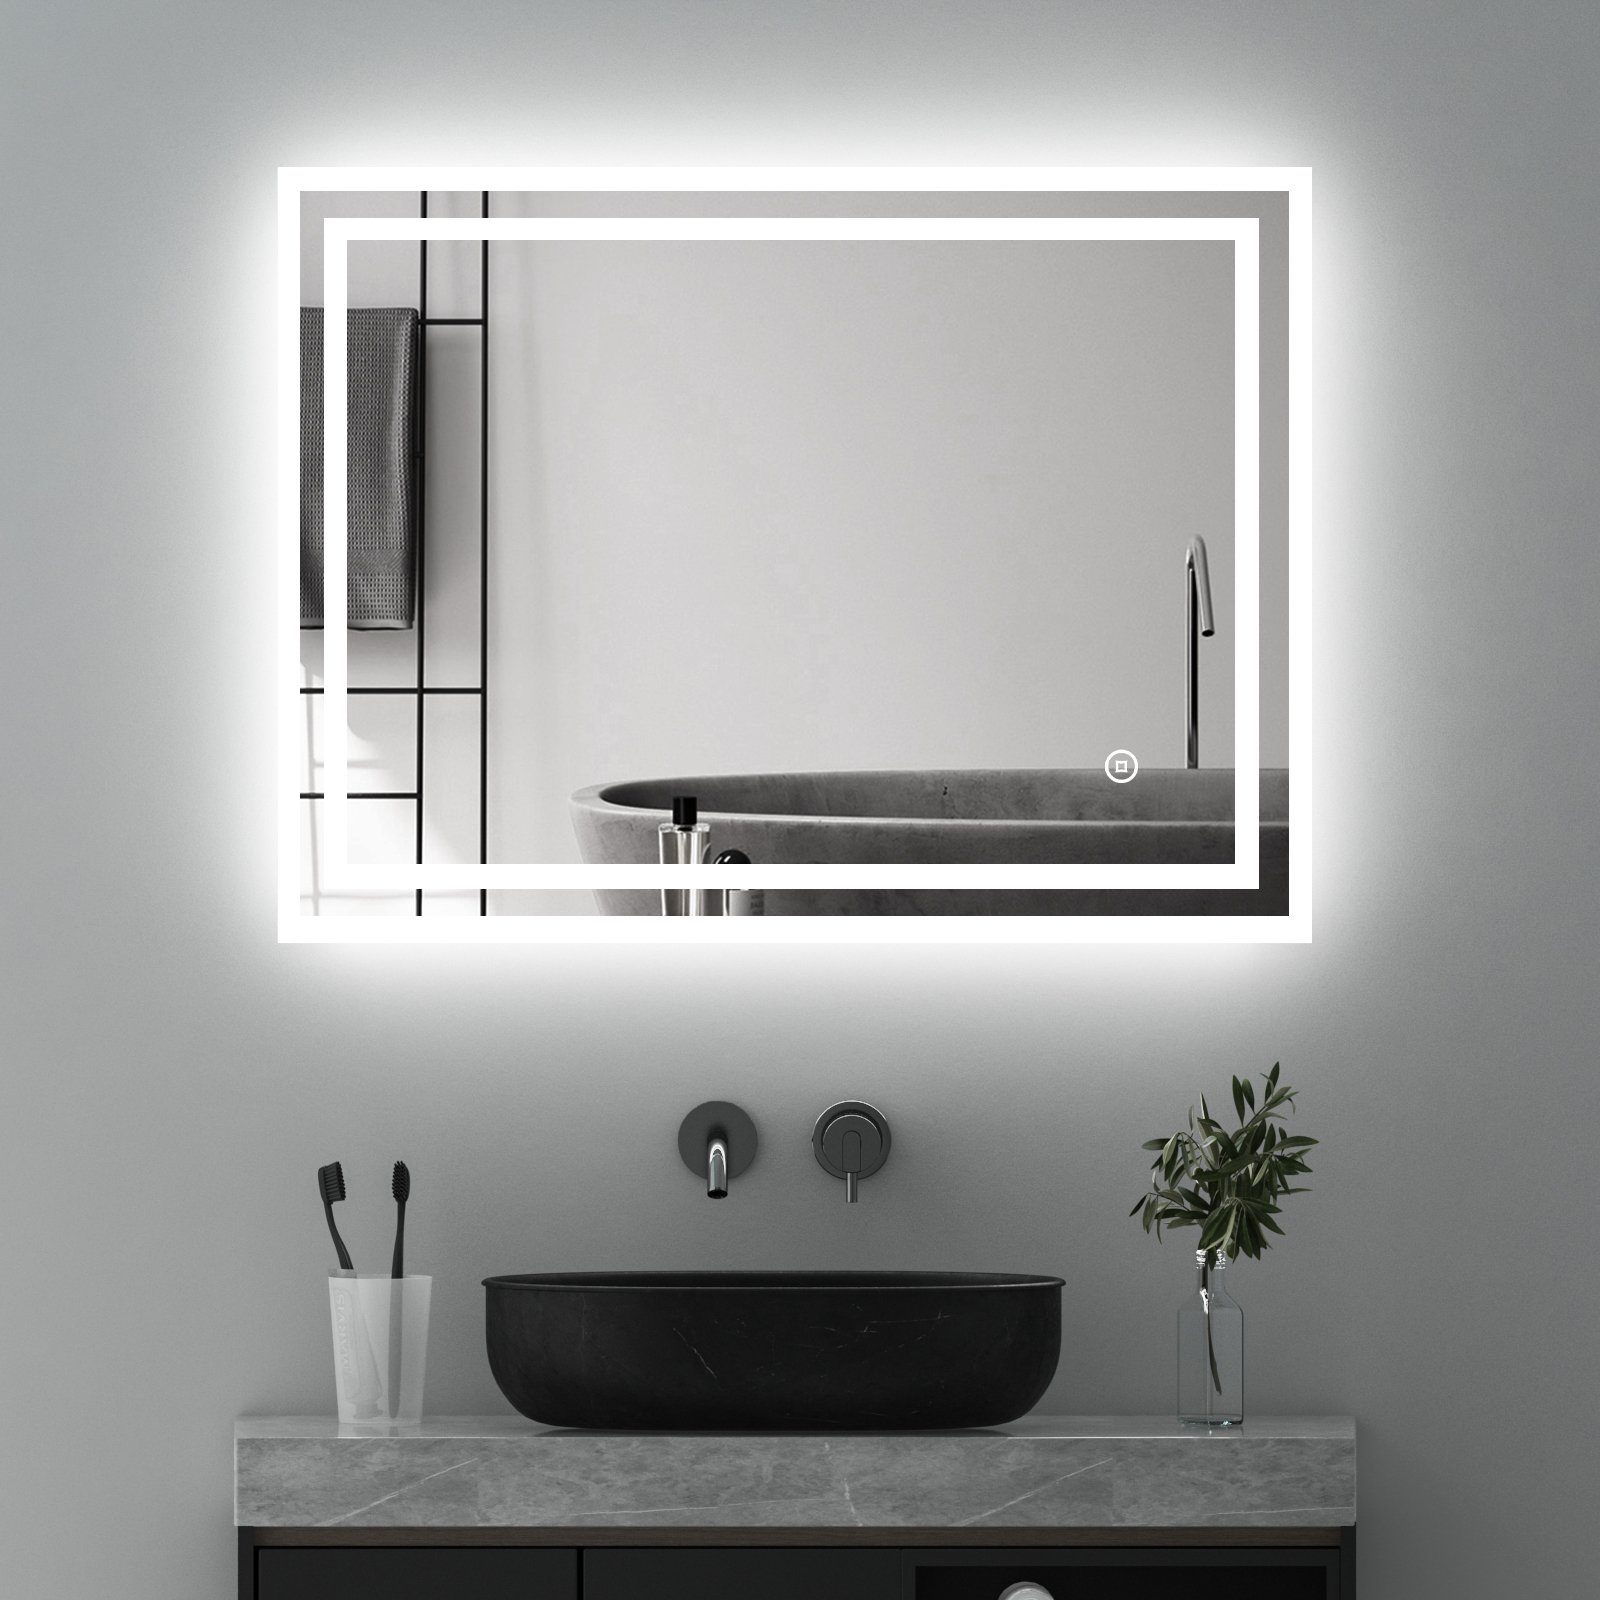 WDWRITTI Badspiegel Badezimmerspiegel mit Beleuchtung Wandspiegel Led Touch Wandschalter (Spiegel Bad, 3Lichtfarben, Helligkeit dimmbar, Memory), 3000K/4000K/6500K, IP44